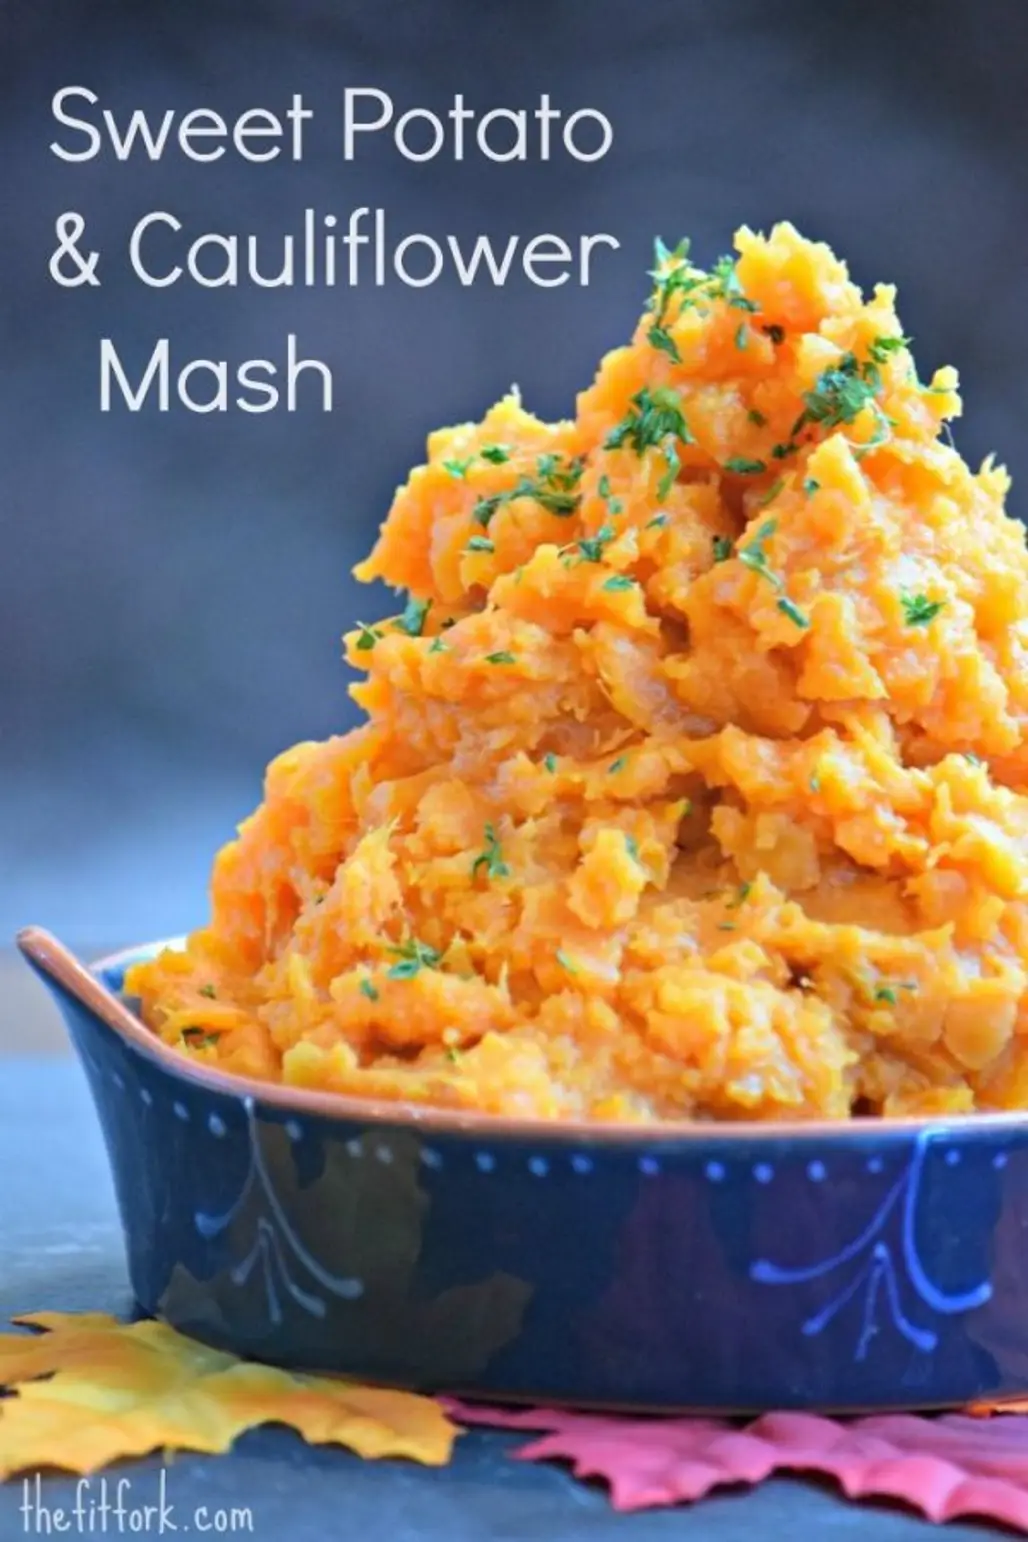 Sweet Potato & Cauliflower Mash